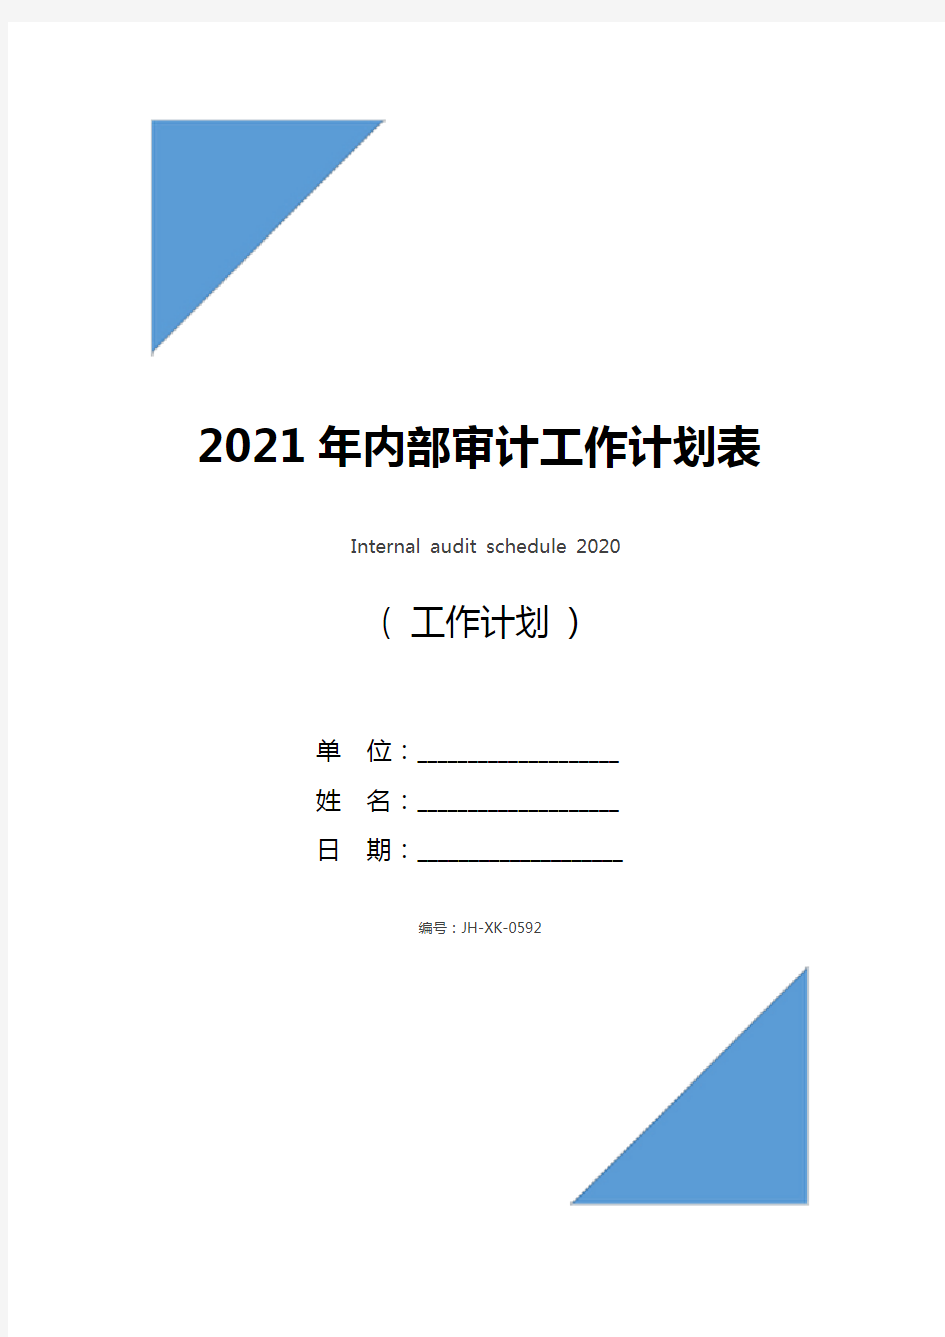 2021年内部审计工作计划表(通用版)